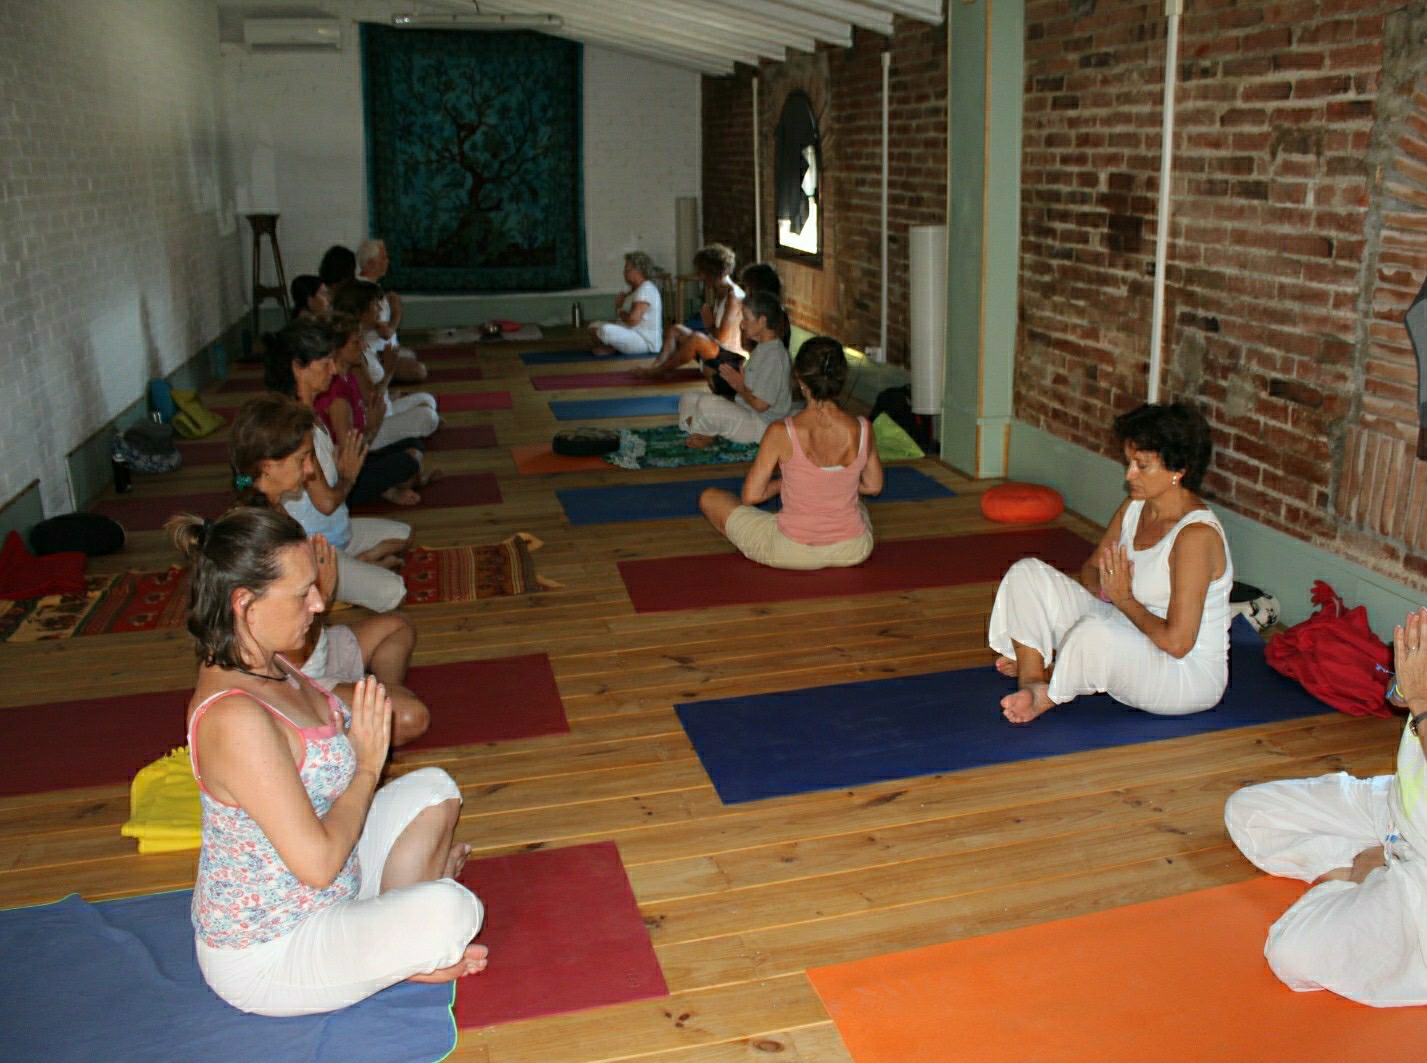 Personas meditando en clase de yoga